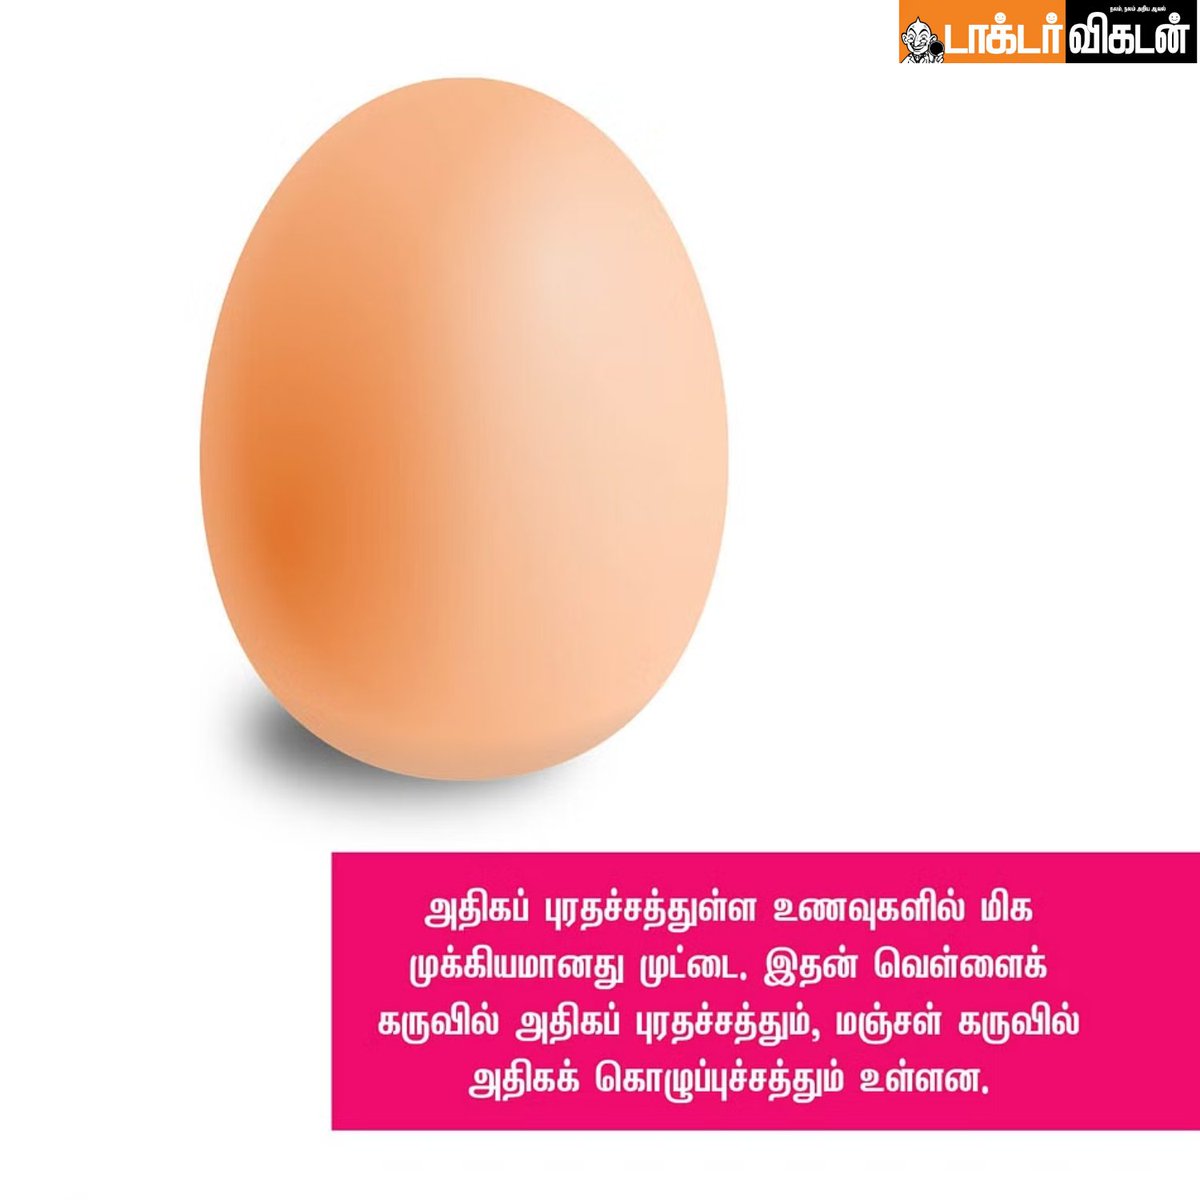 முட்டை நல்லது.... ஏன், எதற்கு, எப்படி?

#eggs #eggfood #food #health #healthcare #eggbenefits